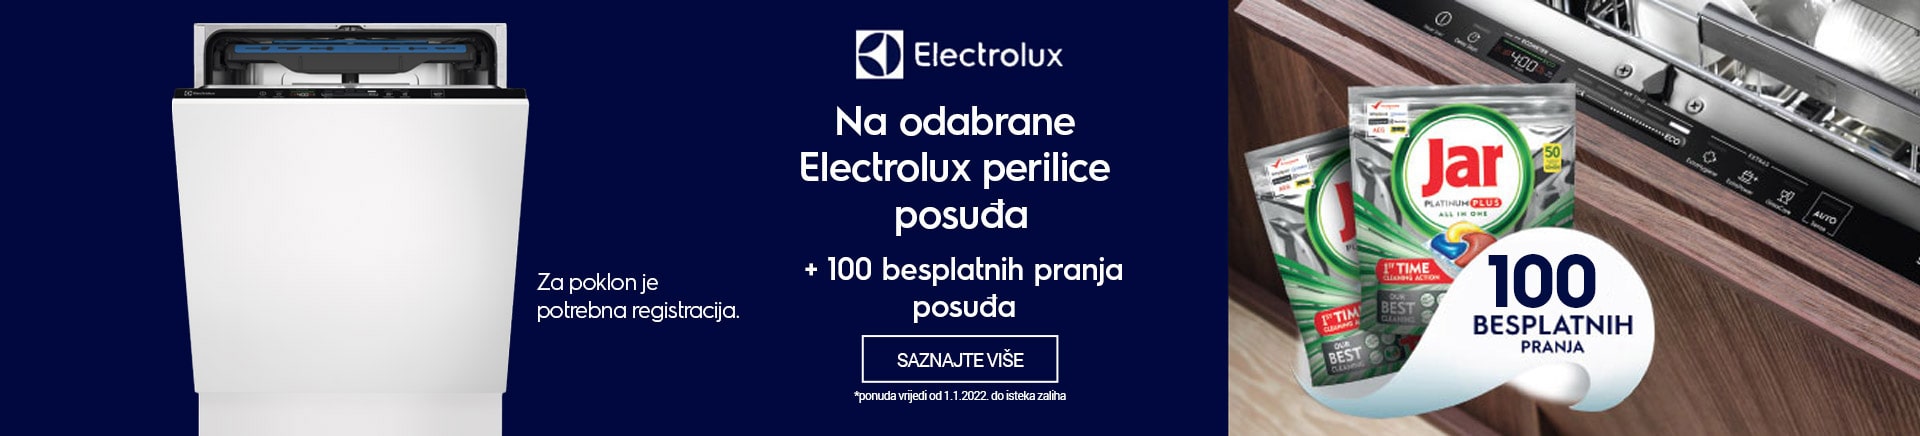 Electrolux perilice posuÄa + 100 besplatnih pranja posuÄa